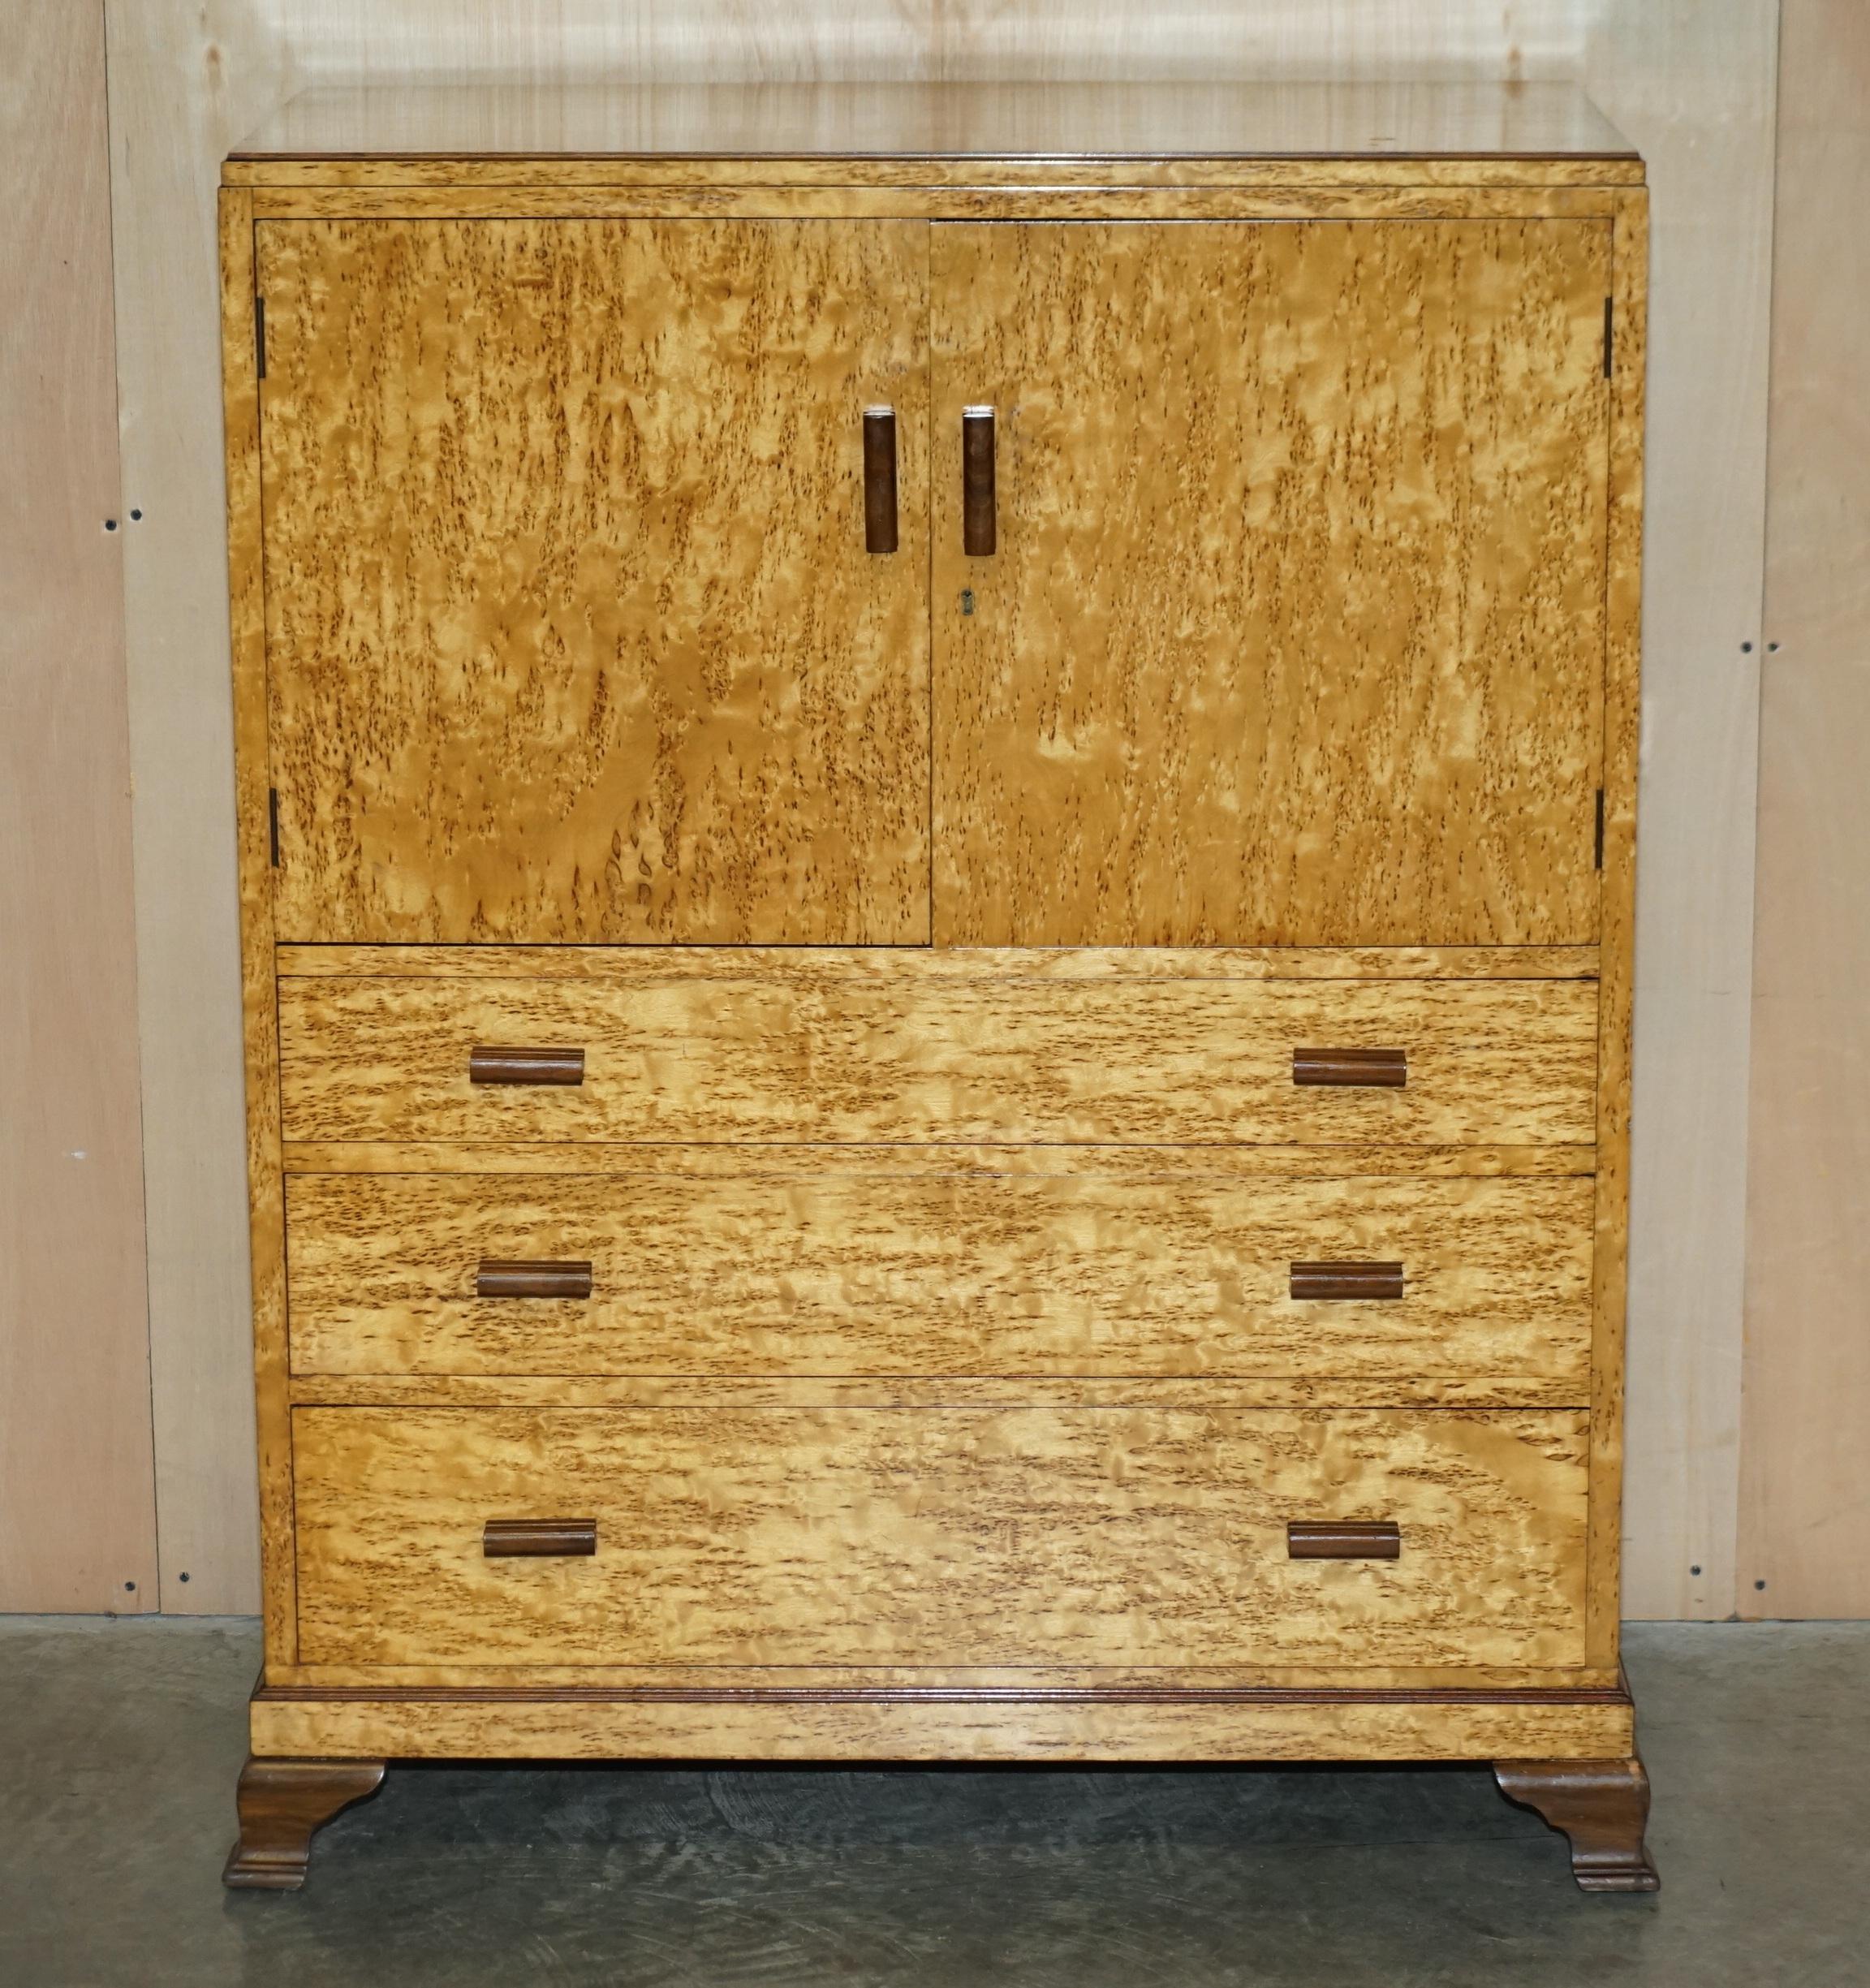 Wir freuen uns sehr, diesen atemberaubenden Original Art Deco Burr Maple Housekeepers Schrank mit einer Kommode Basis zum Verkauf anzubieten.

Dies ist Teil einer Suite, insgesamt habe ich einen Beistellstuhl, einen Schminktischhocker, einen